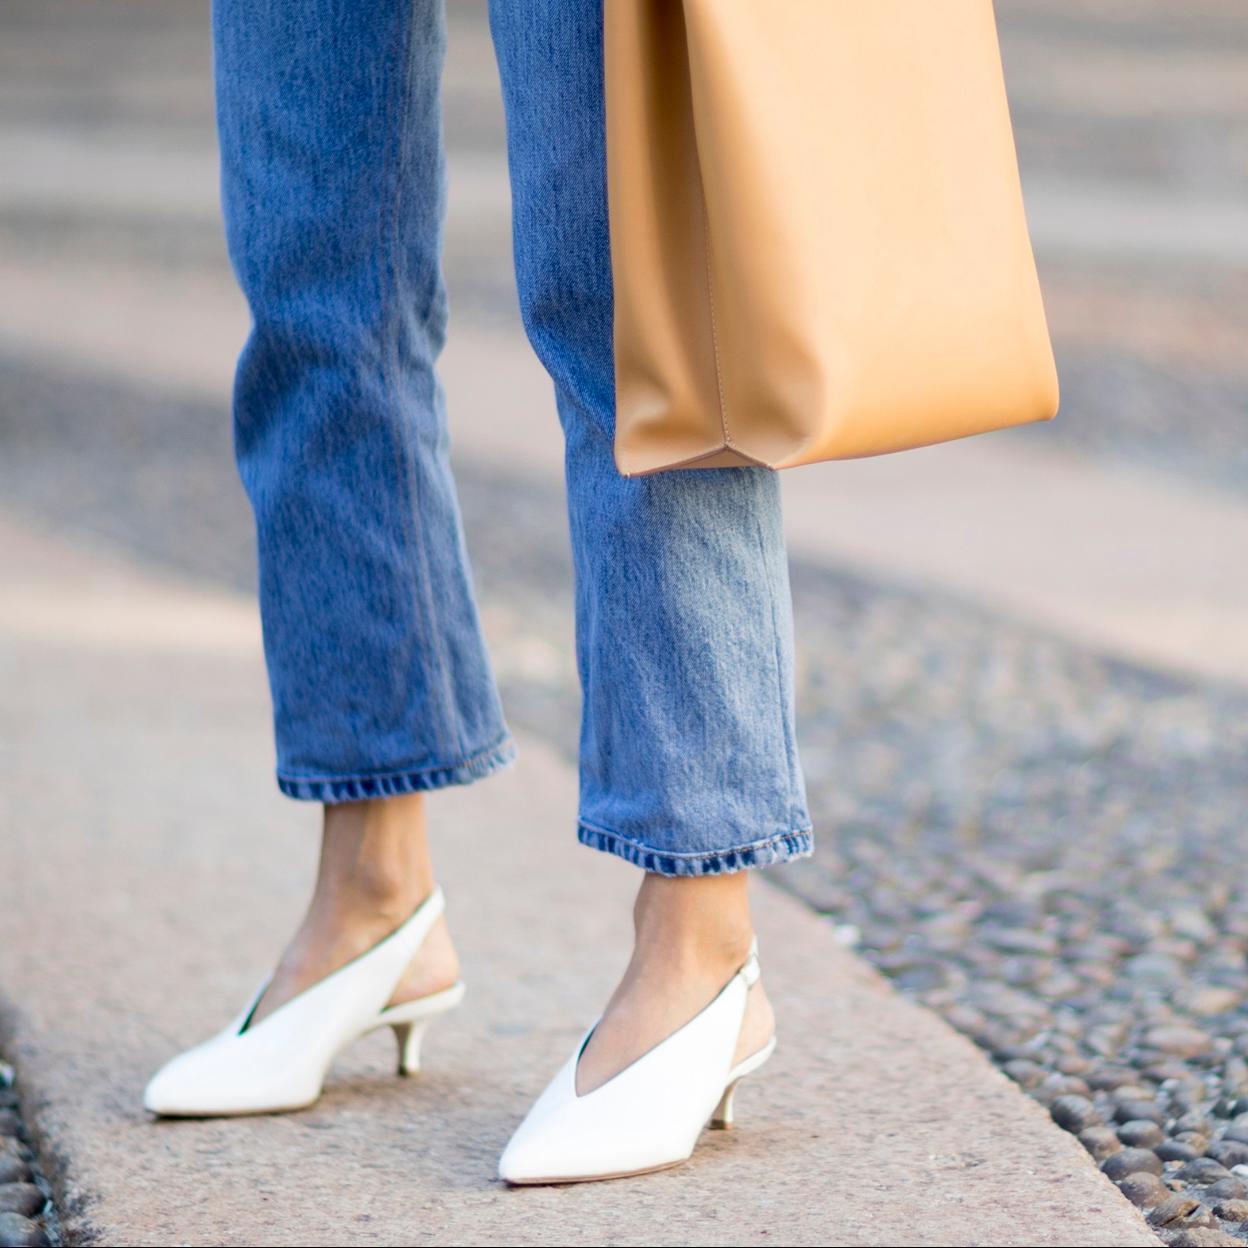 Bailarinas, botines... los zapatos cómodos más bonitos de la nueva colección de Sfera para llevar a la oficina en todo tipo de estilismos | Mujer Hoy